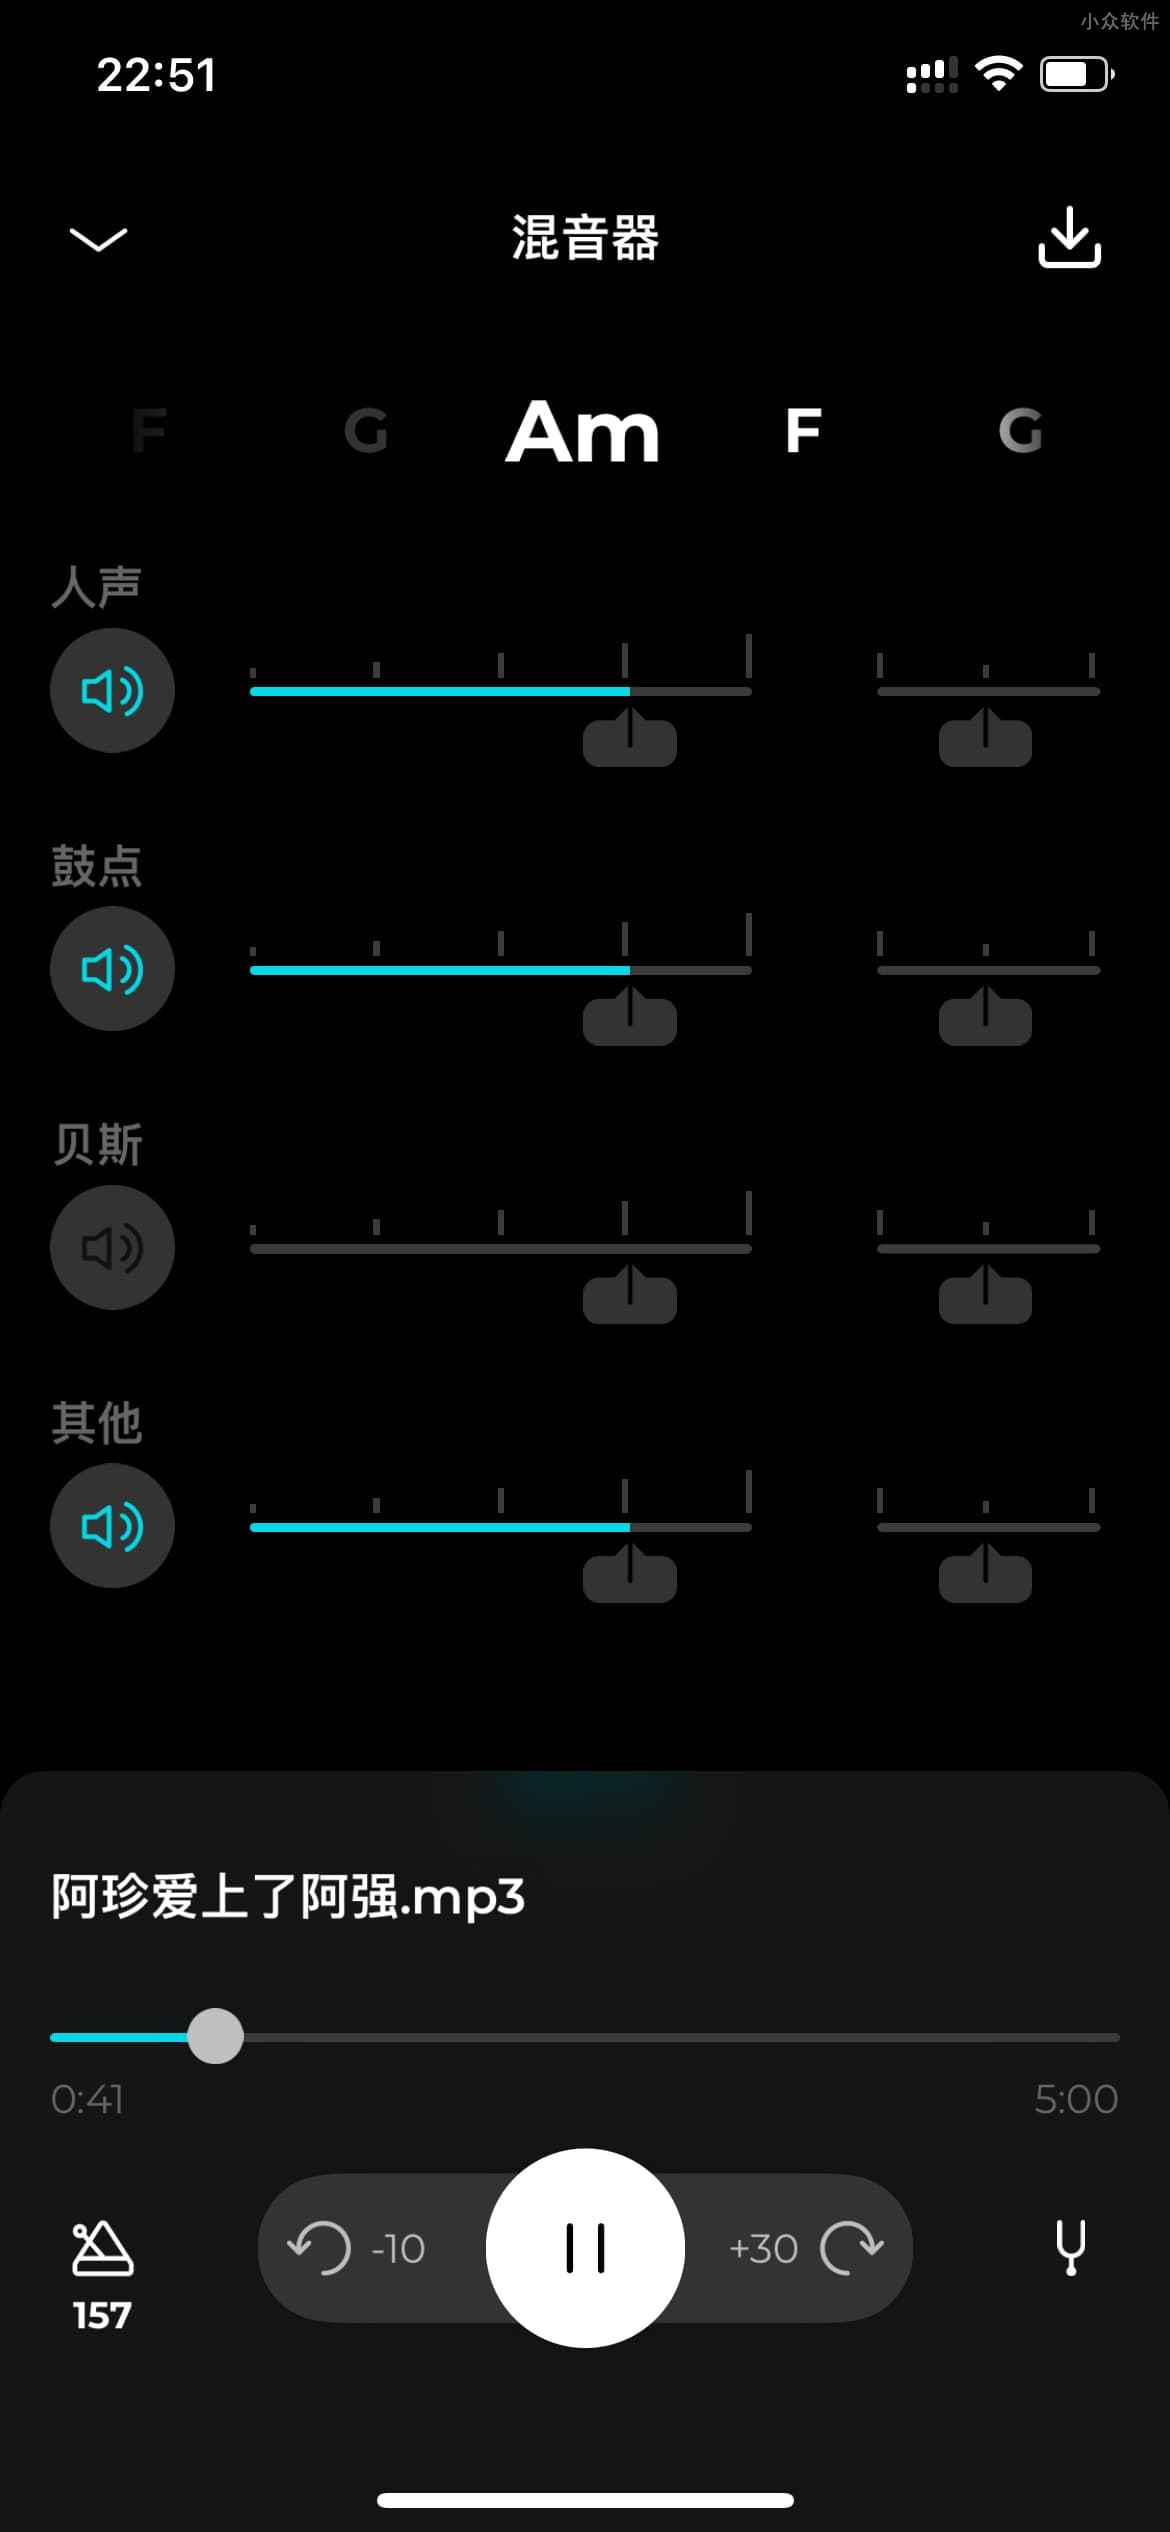 Moises - 从歌曲中提取人声与伴奏，并单独分离各种乐器的声音[iOS/Android] 1